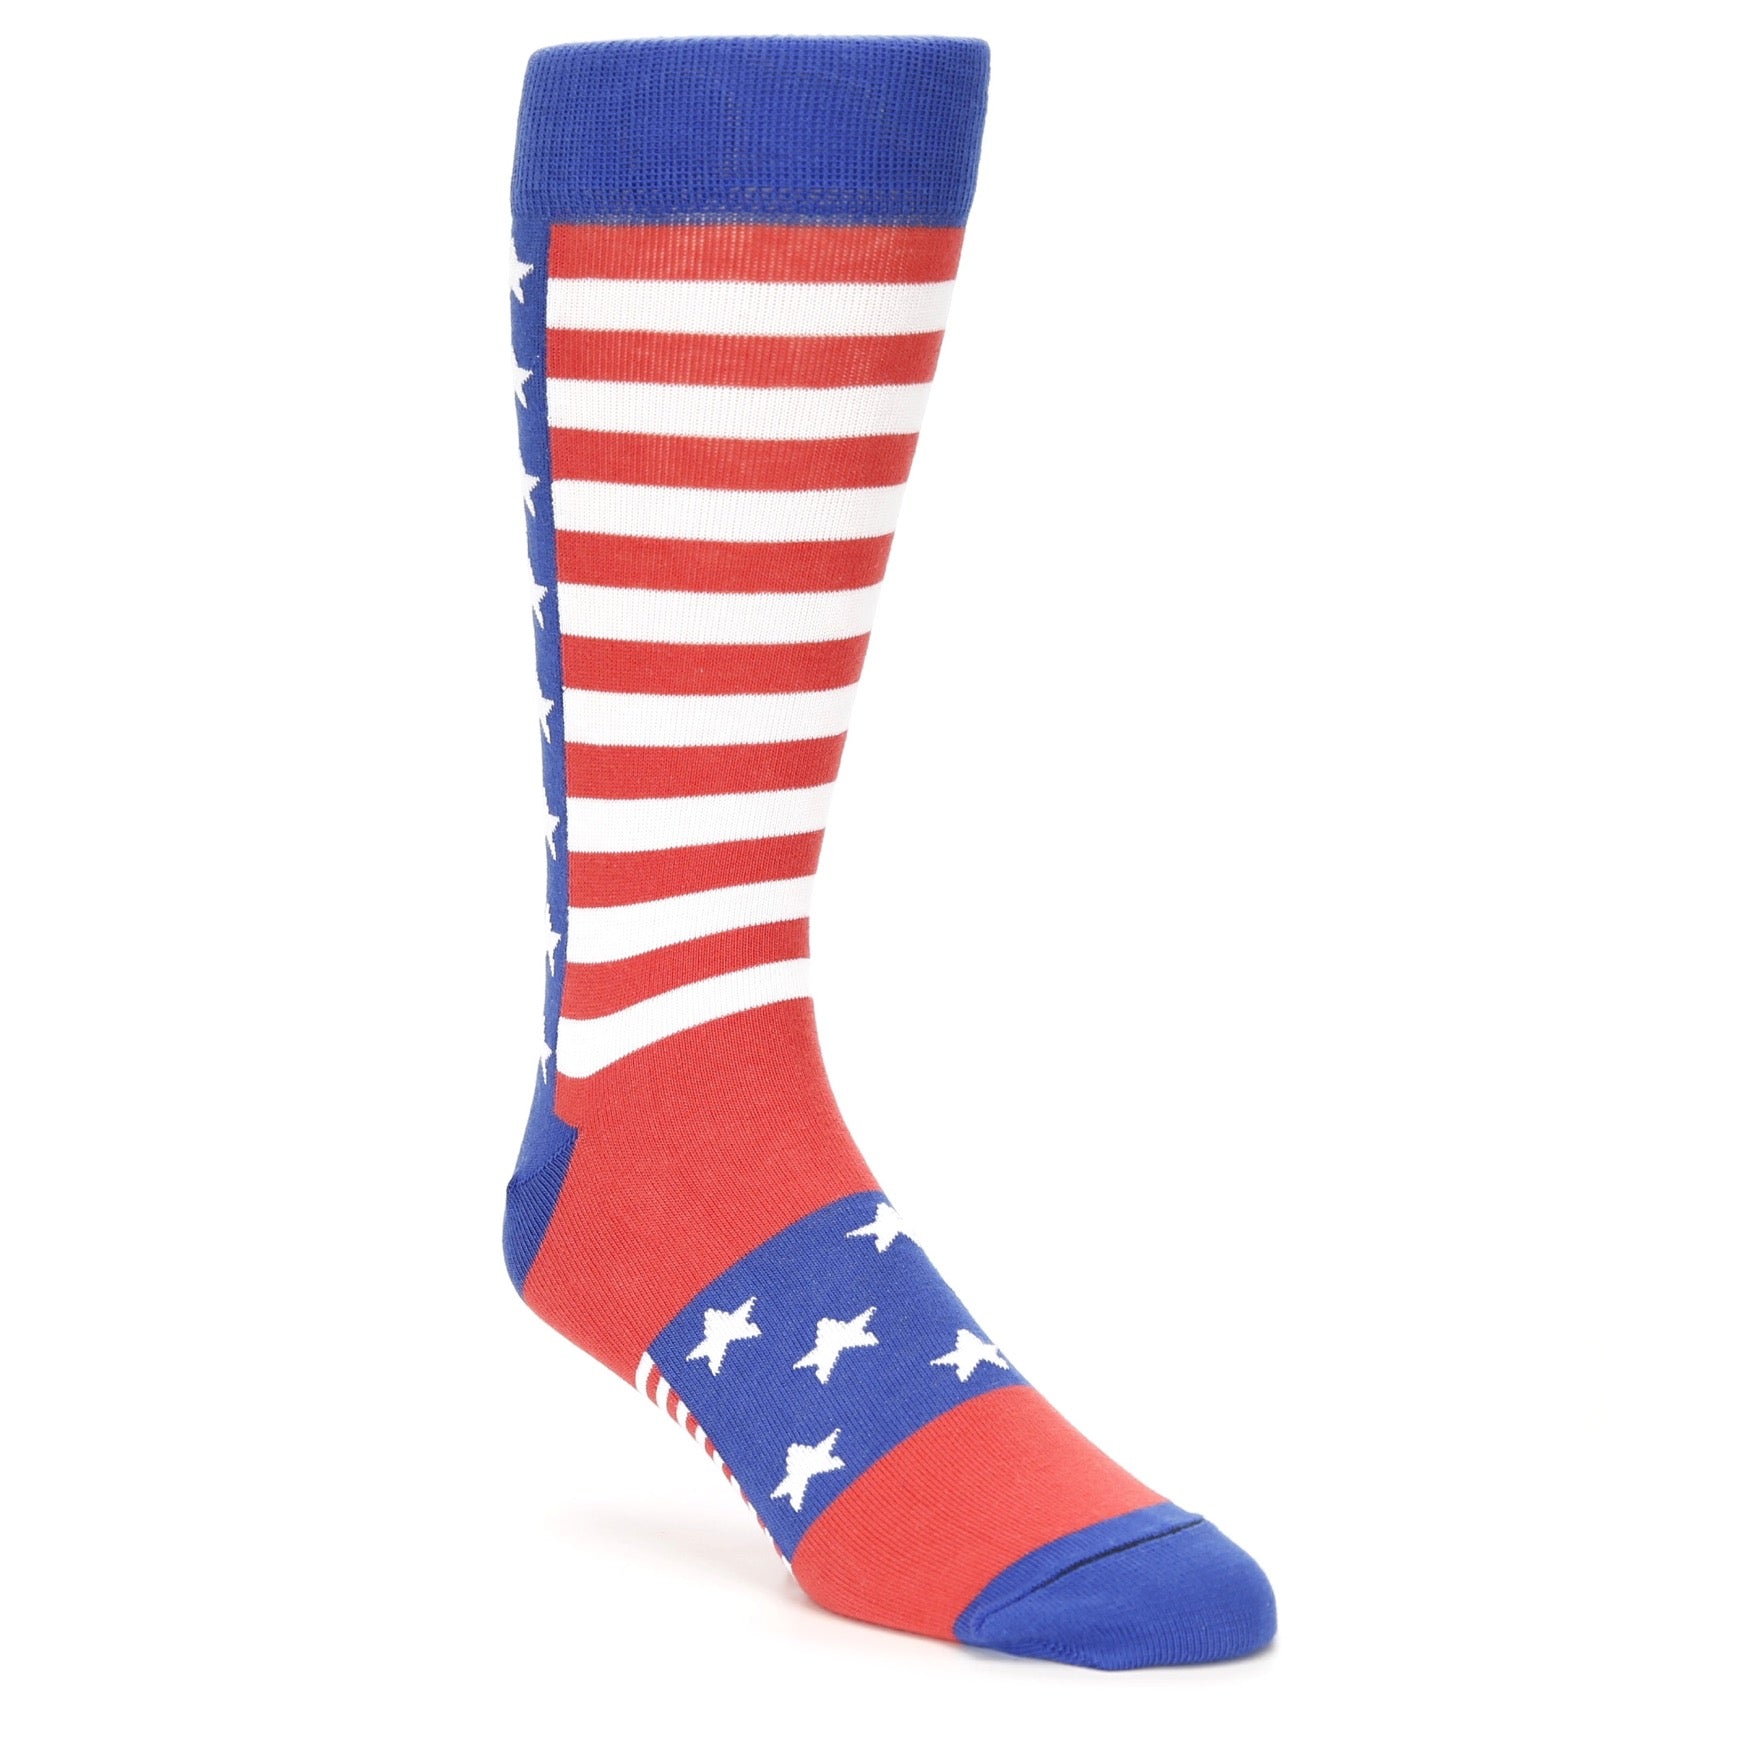 Stars Stripes American Flag Socks - USA Made - Men's Novelty Dress Socks